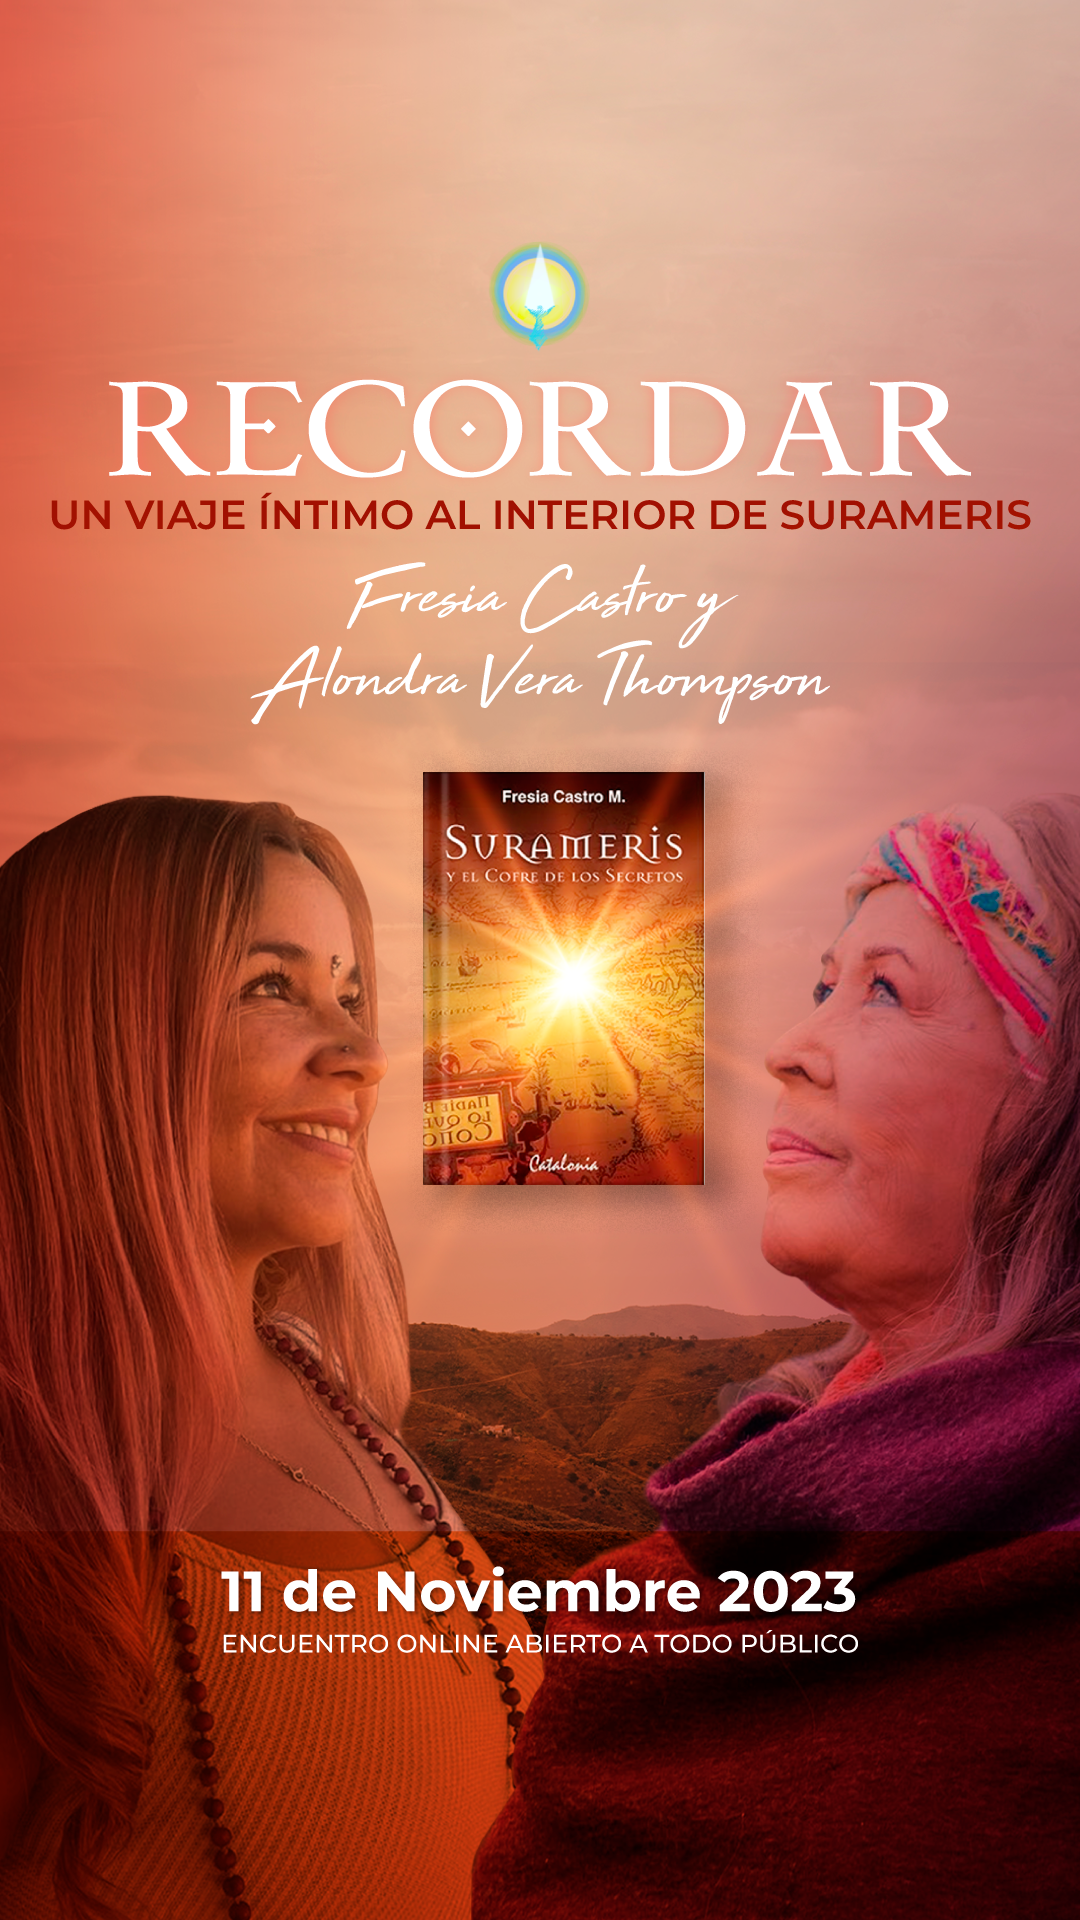 Recordar, con Fresia Castro y Alonda Vera Thompson